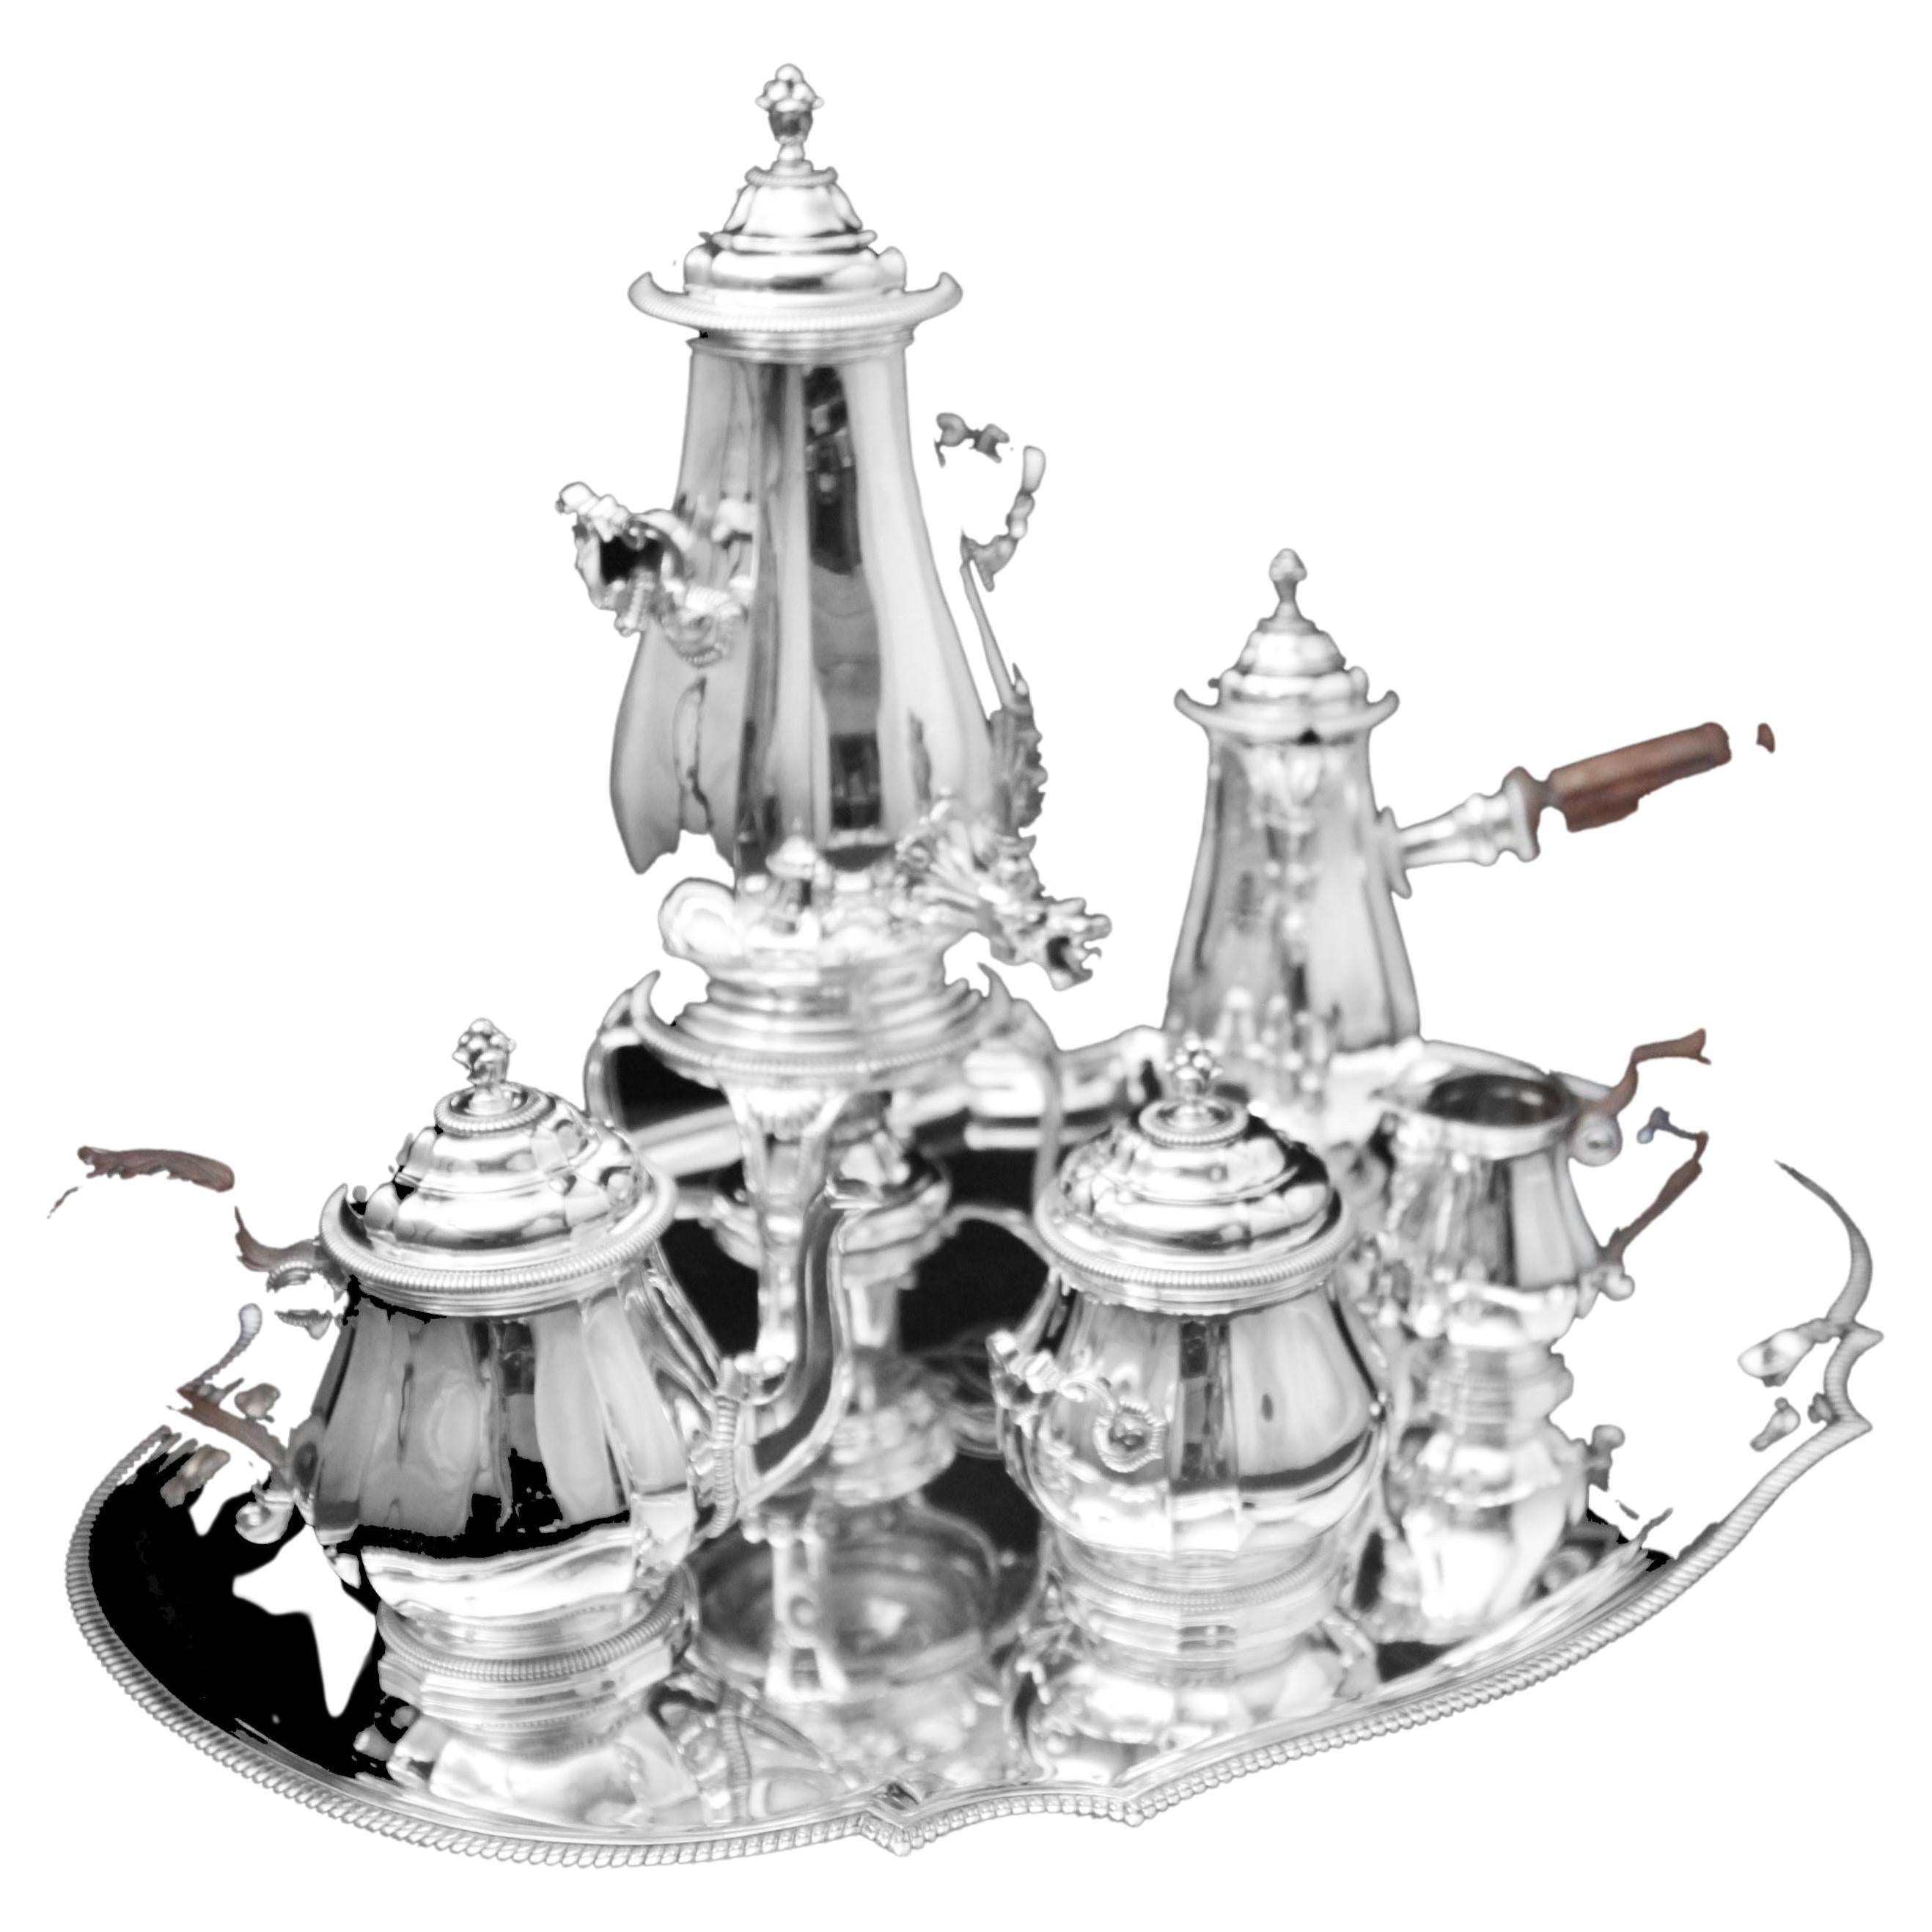 Boin-Taburet: 6 Stk. Antike Französisch 950 Sterling Silber Tee-Set - wie neu!